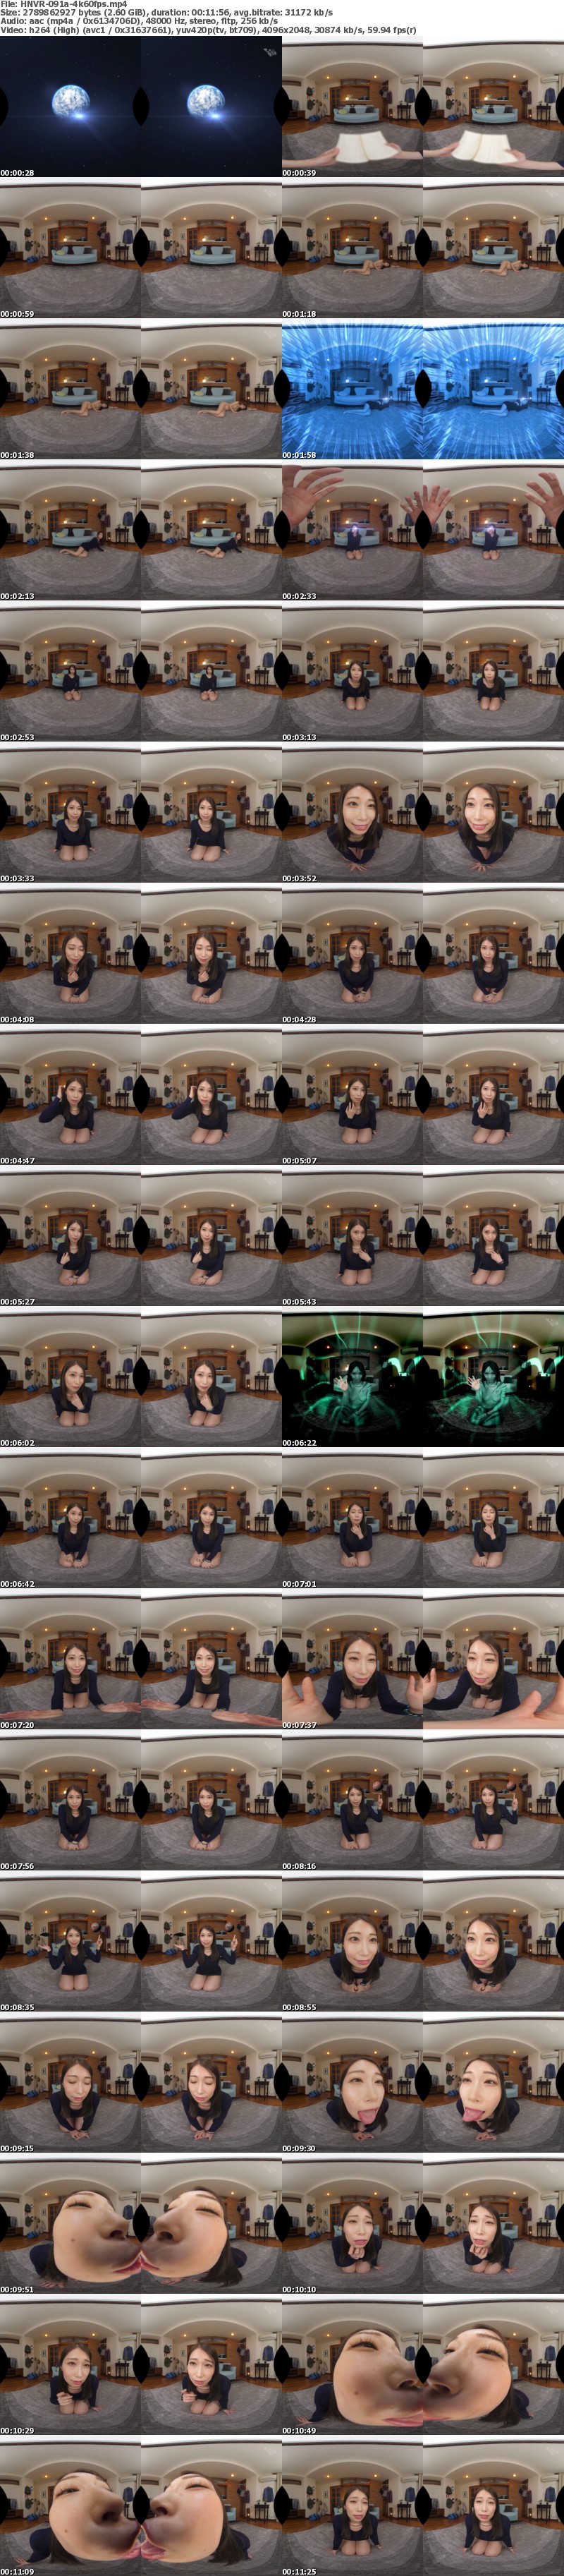 (VR) HNVR-091 【VR】地球外生命体VR 最新技術VFX編集 超視覚効果で未体験ゾーン中出し 宇宙人佐伯由美香